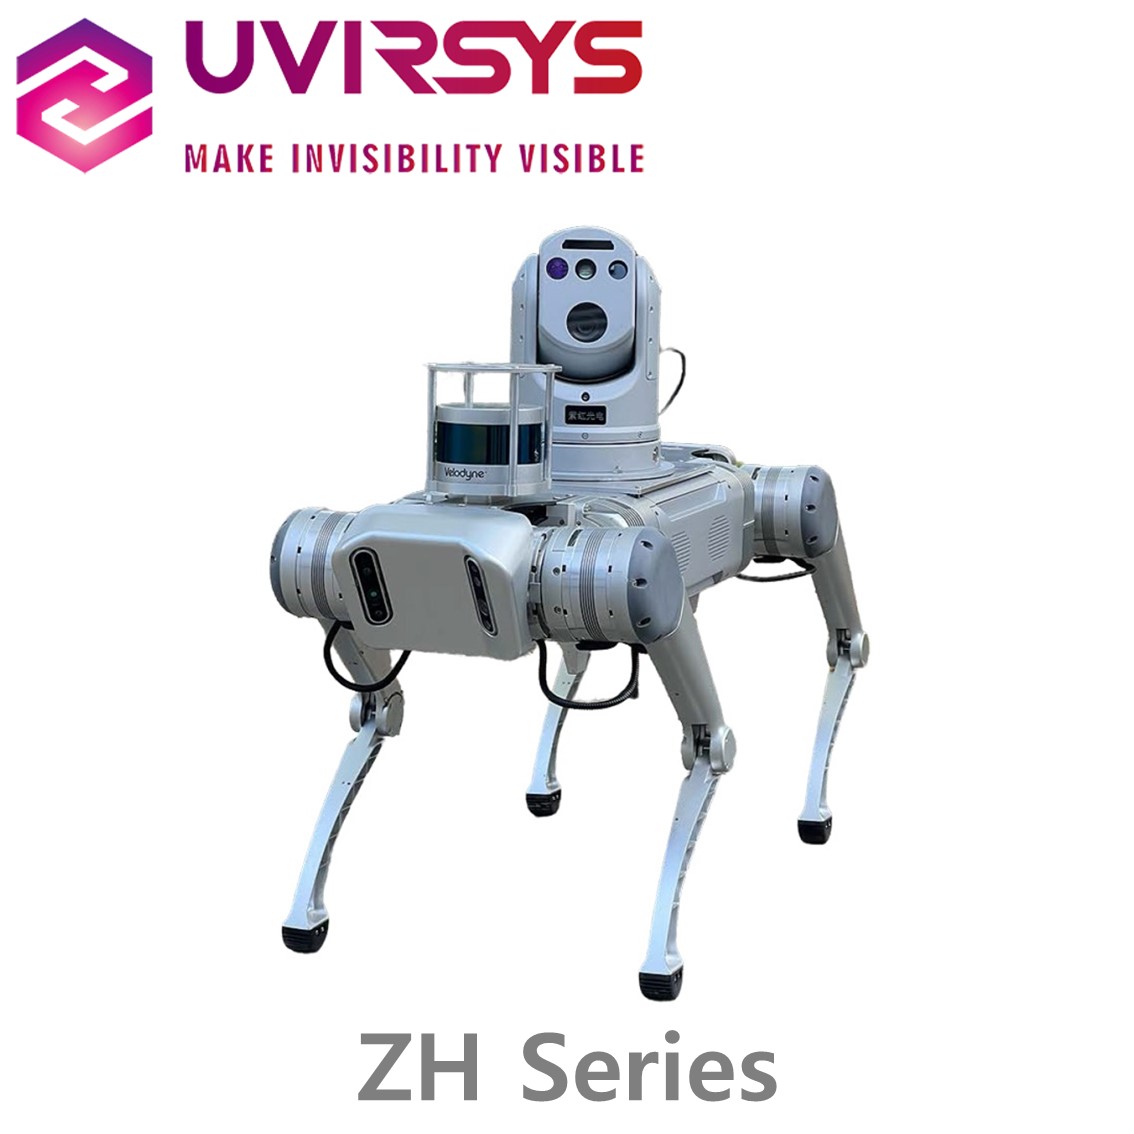 [ UVIRSYS ] ZH480, ZH580시리즈 코로나 탐지 카메라,코로나 드론, 코로나 로봇개 UV, VIS, Dual F.O.V lens